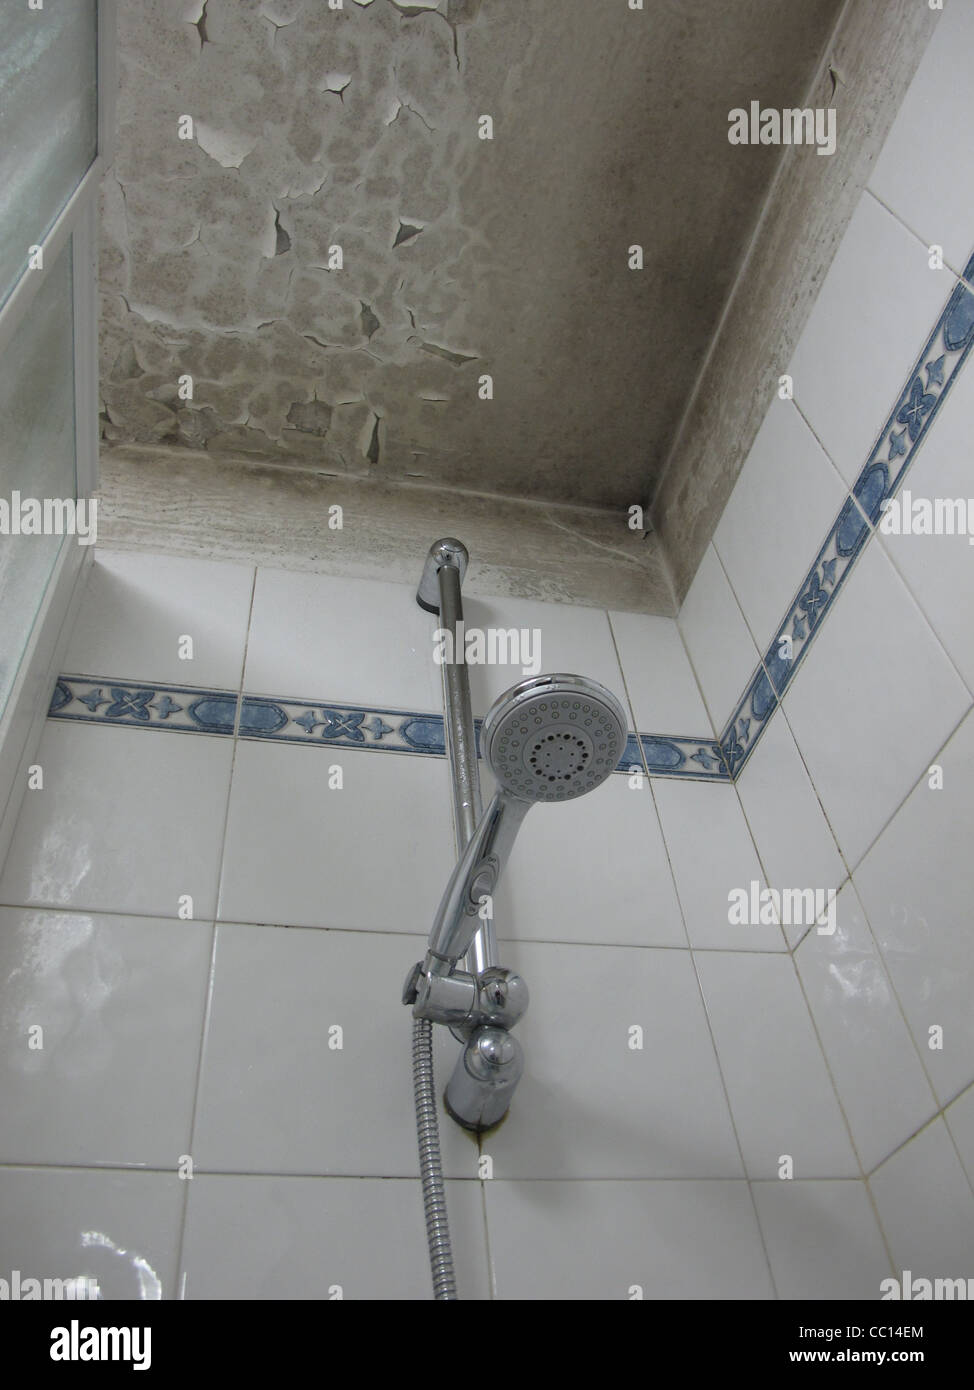 Bad Dusche mit feuchten abblätternde Farbe an Decke Stockfotografie - Alamy